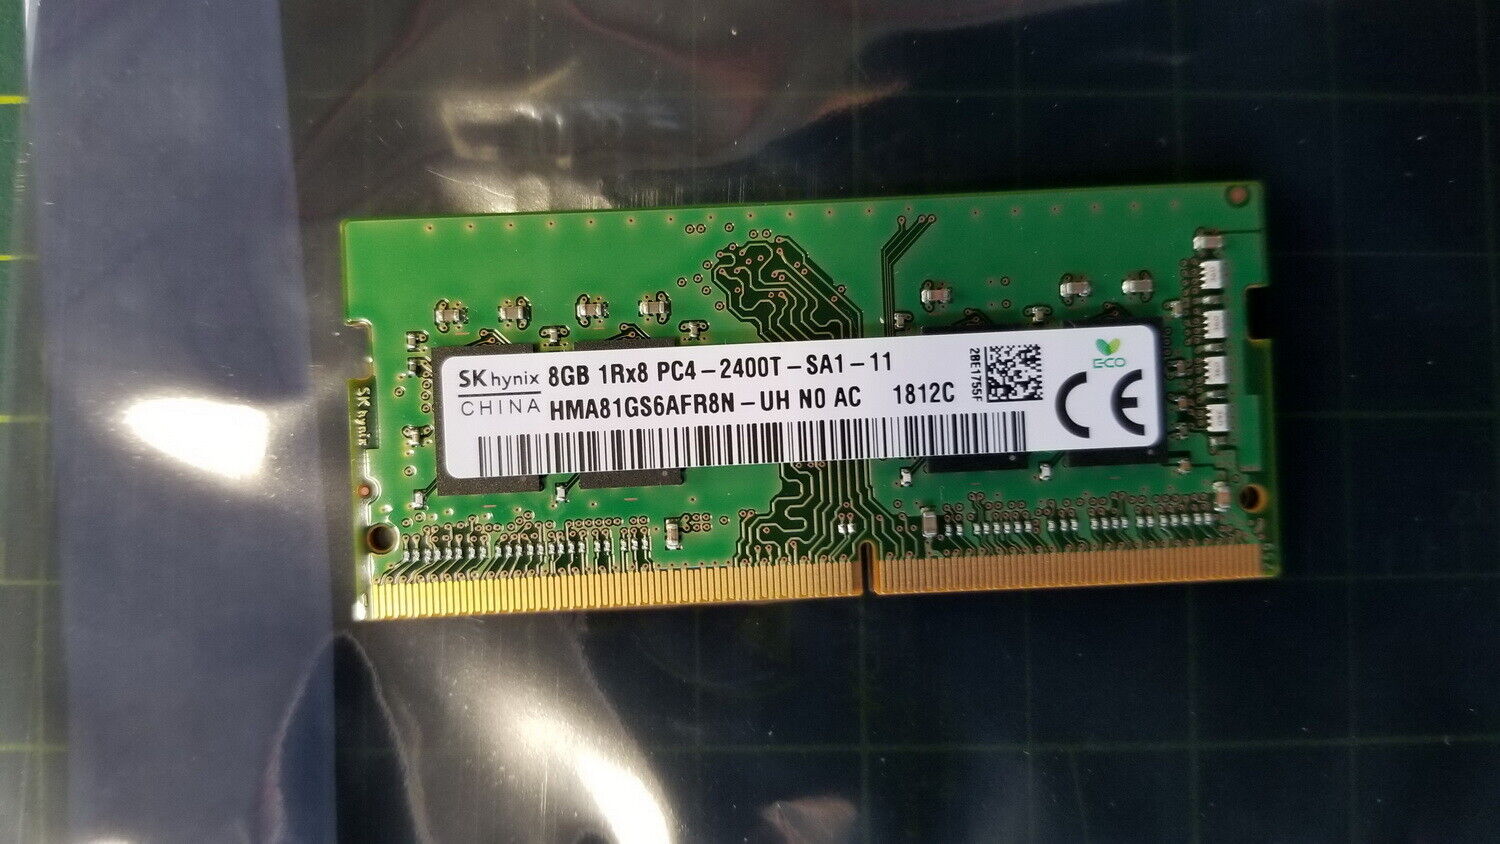 SK Hynix 8GB DDR4 1Rx8 PC4-2400T SO-DIMM MEMORY RAM MODULE HMA81GS6AFR8N-UH 